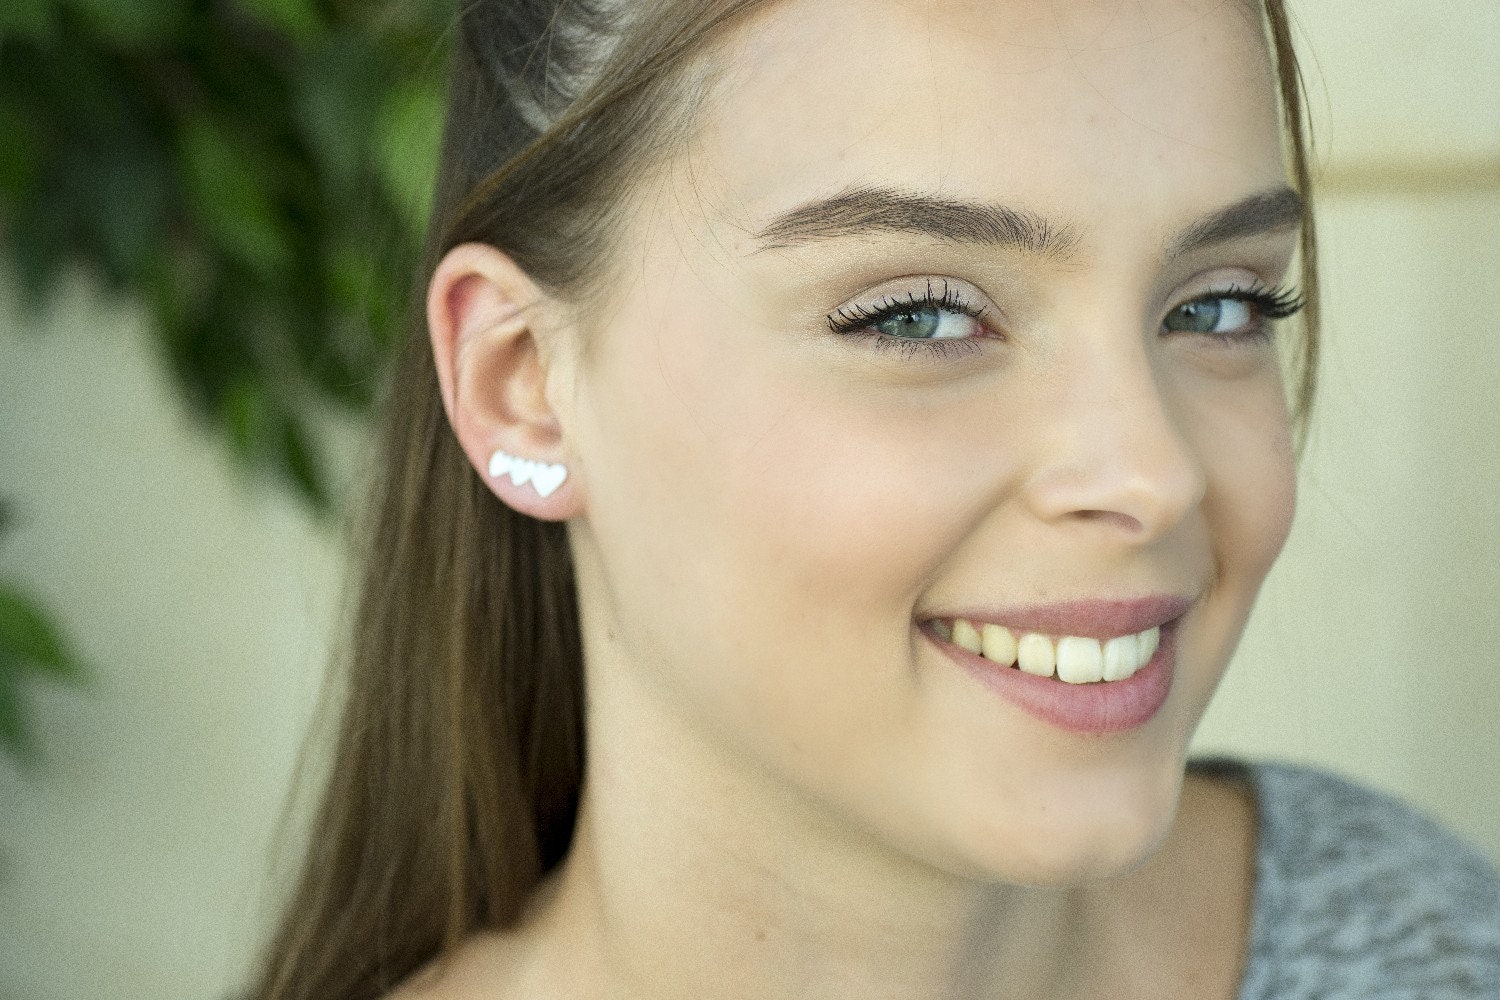 Ear Cuff Earrings Heart Earrings 14K Gold Plated OR Sterling | Etsy